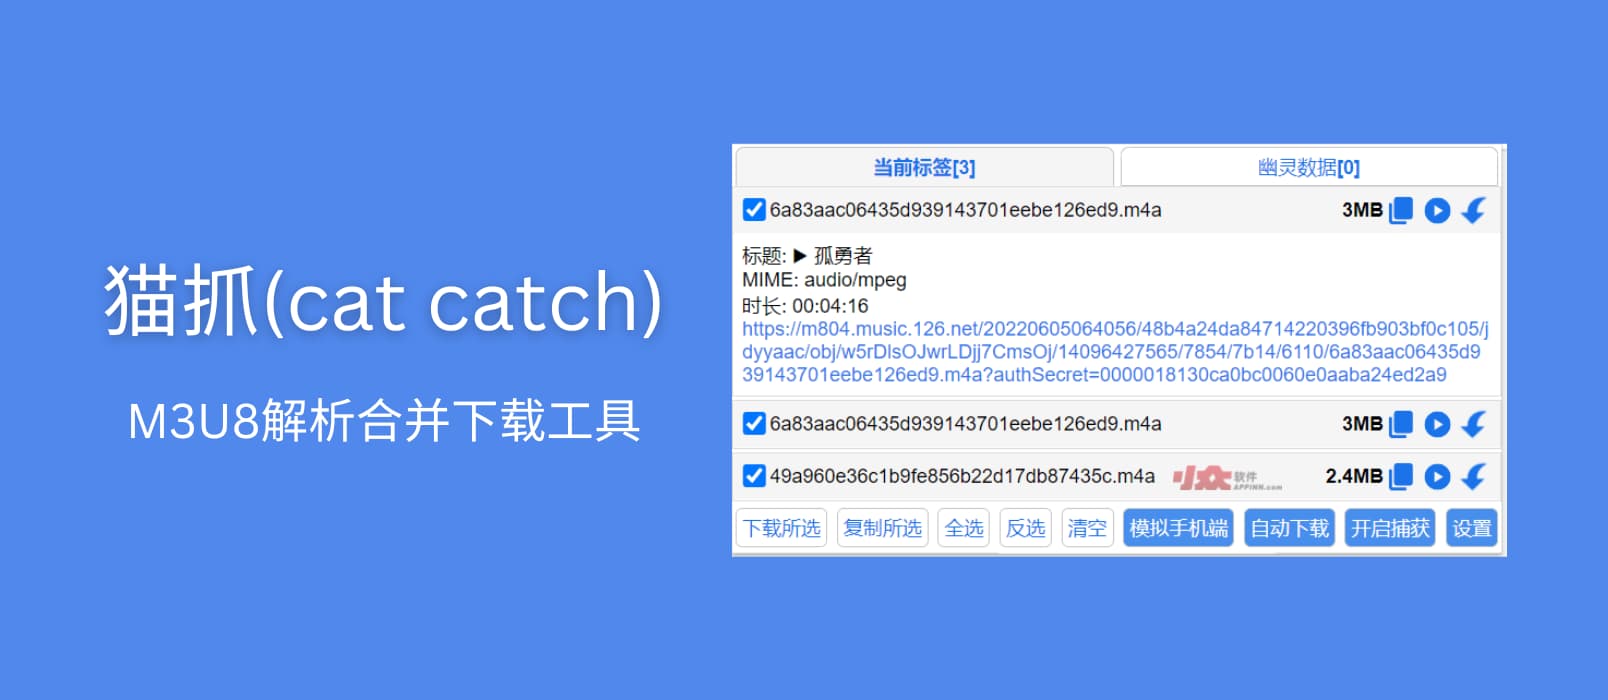 猫抓 Cat Catch – 抓取网页视频，M3U8 解析下载合并工具[Chrome/Firefox]